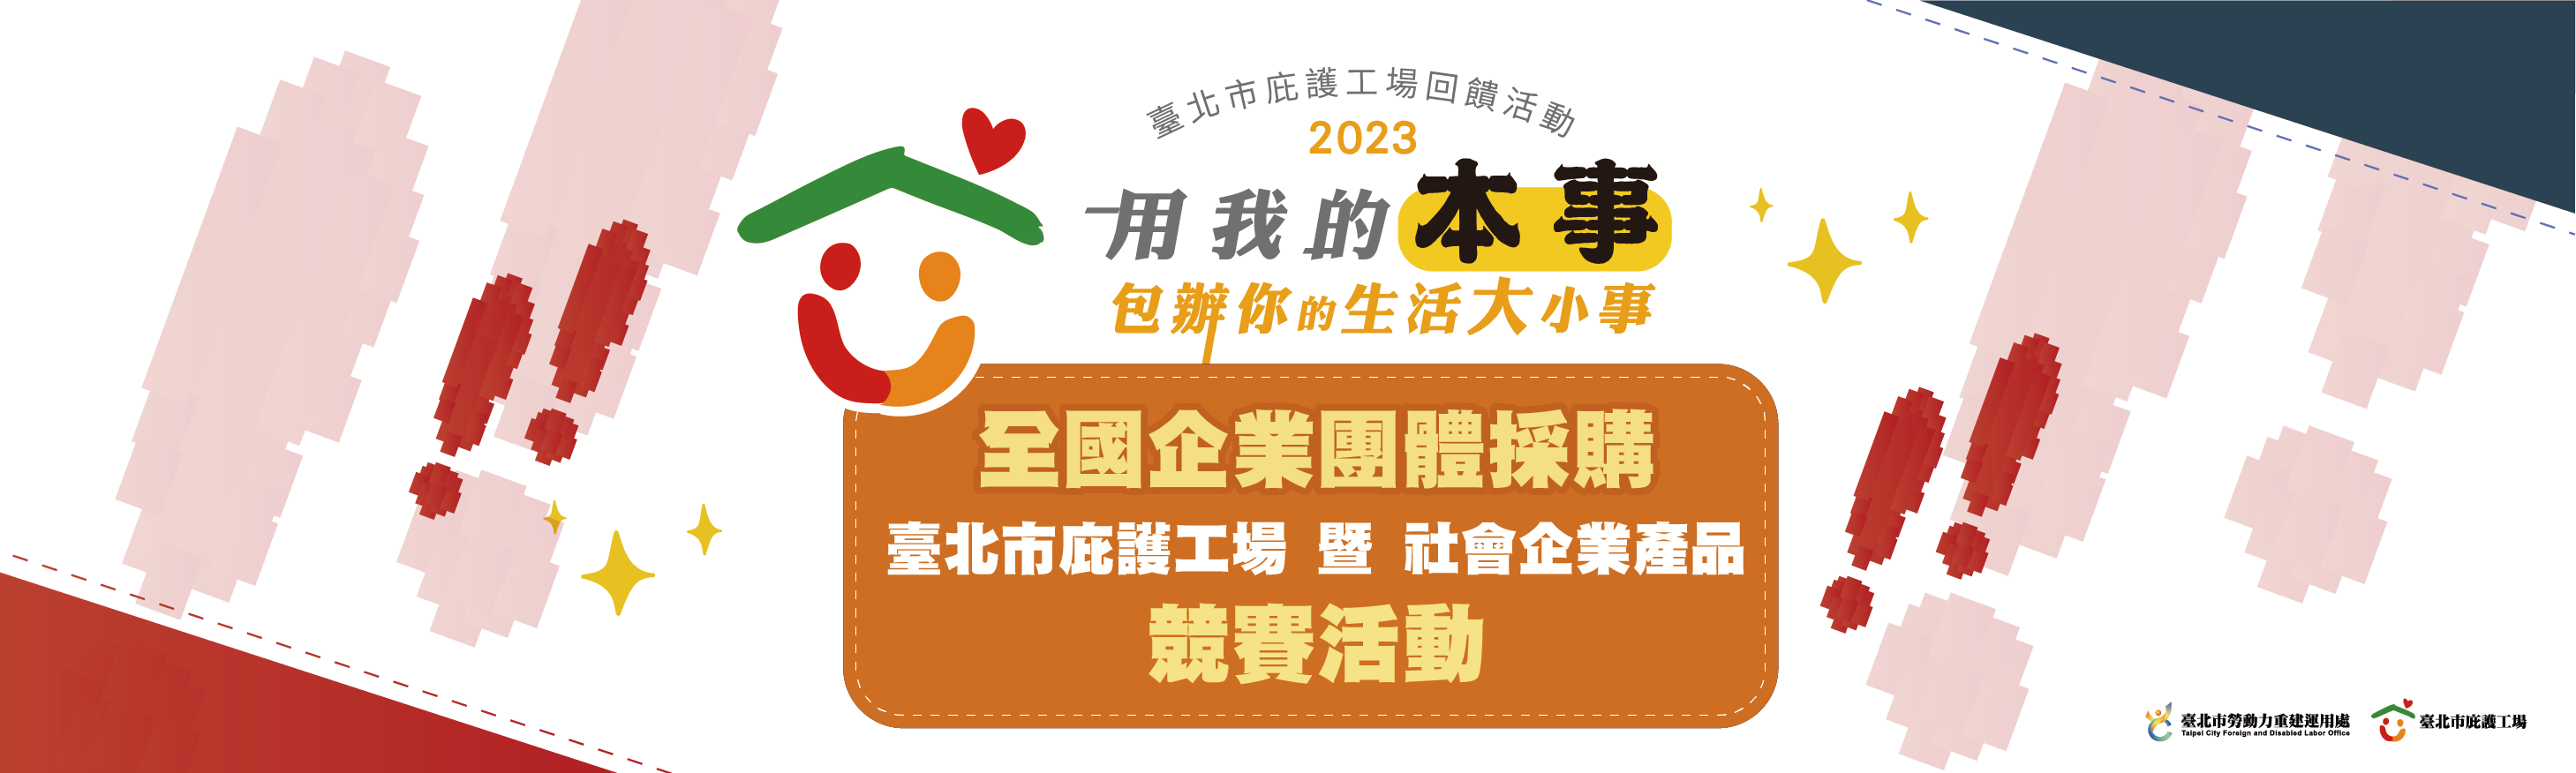 2023 全國企業團體採購臺北市庇護工場暨社會企業產品競賽活動